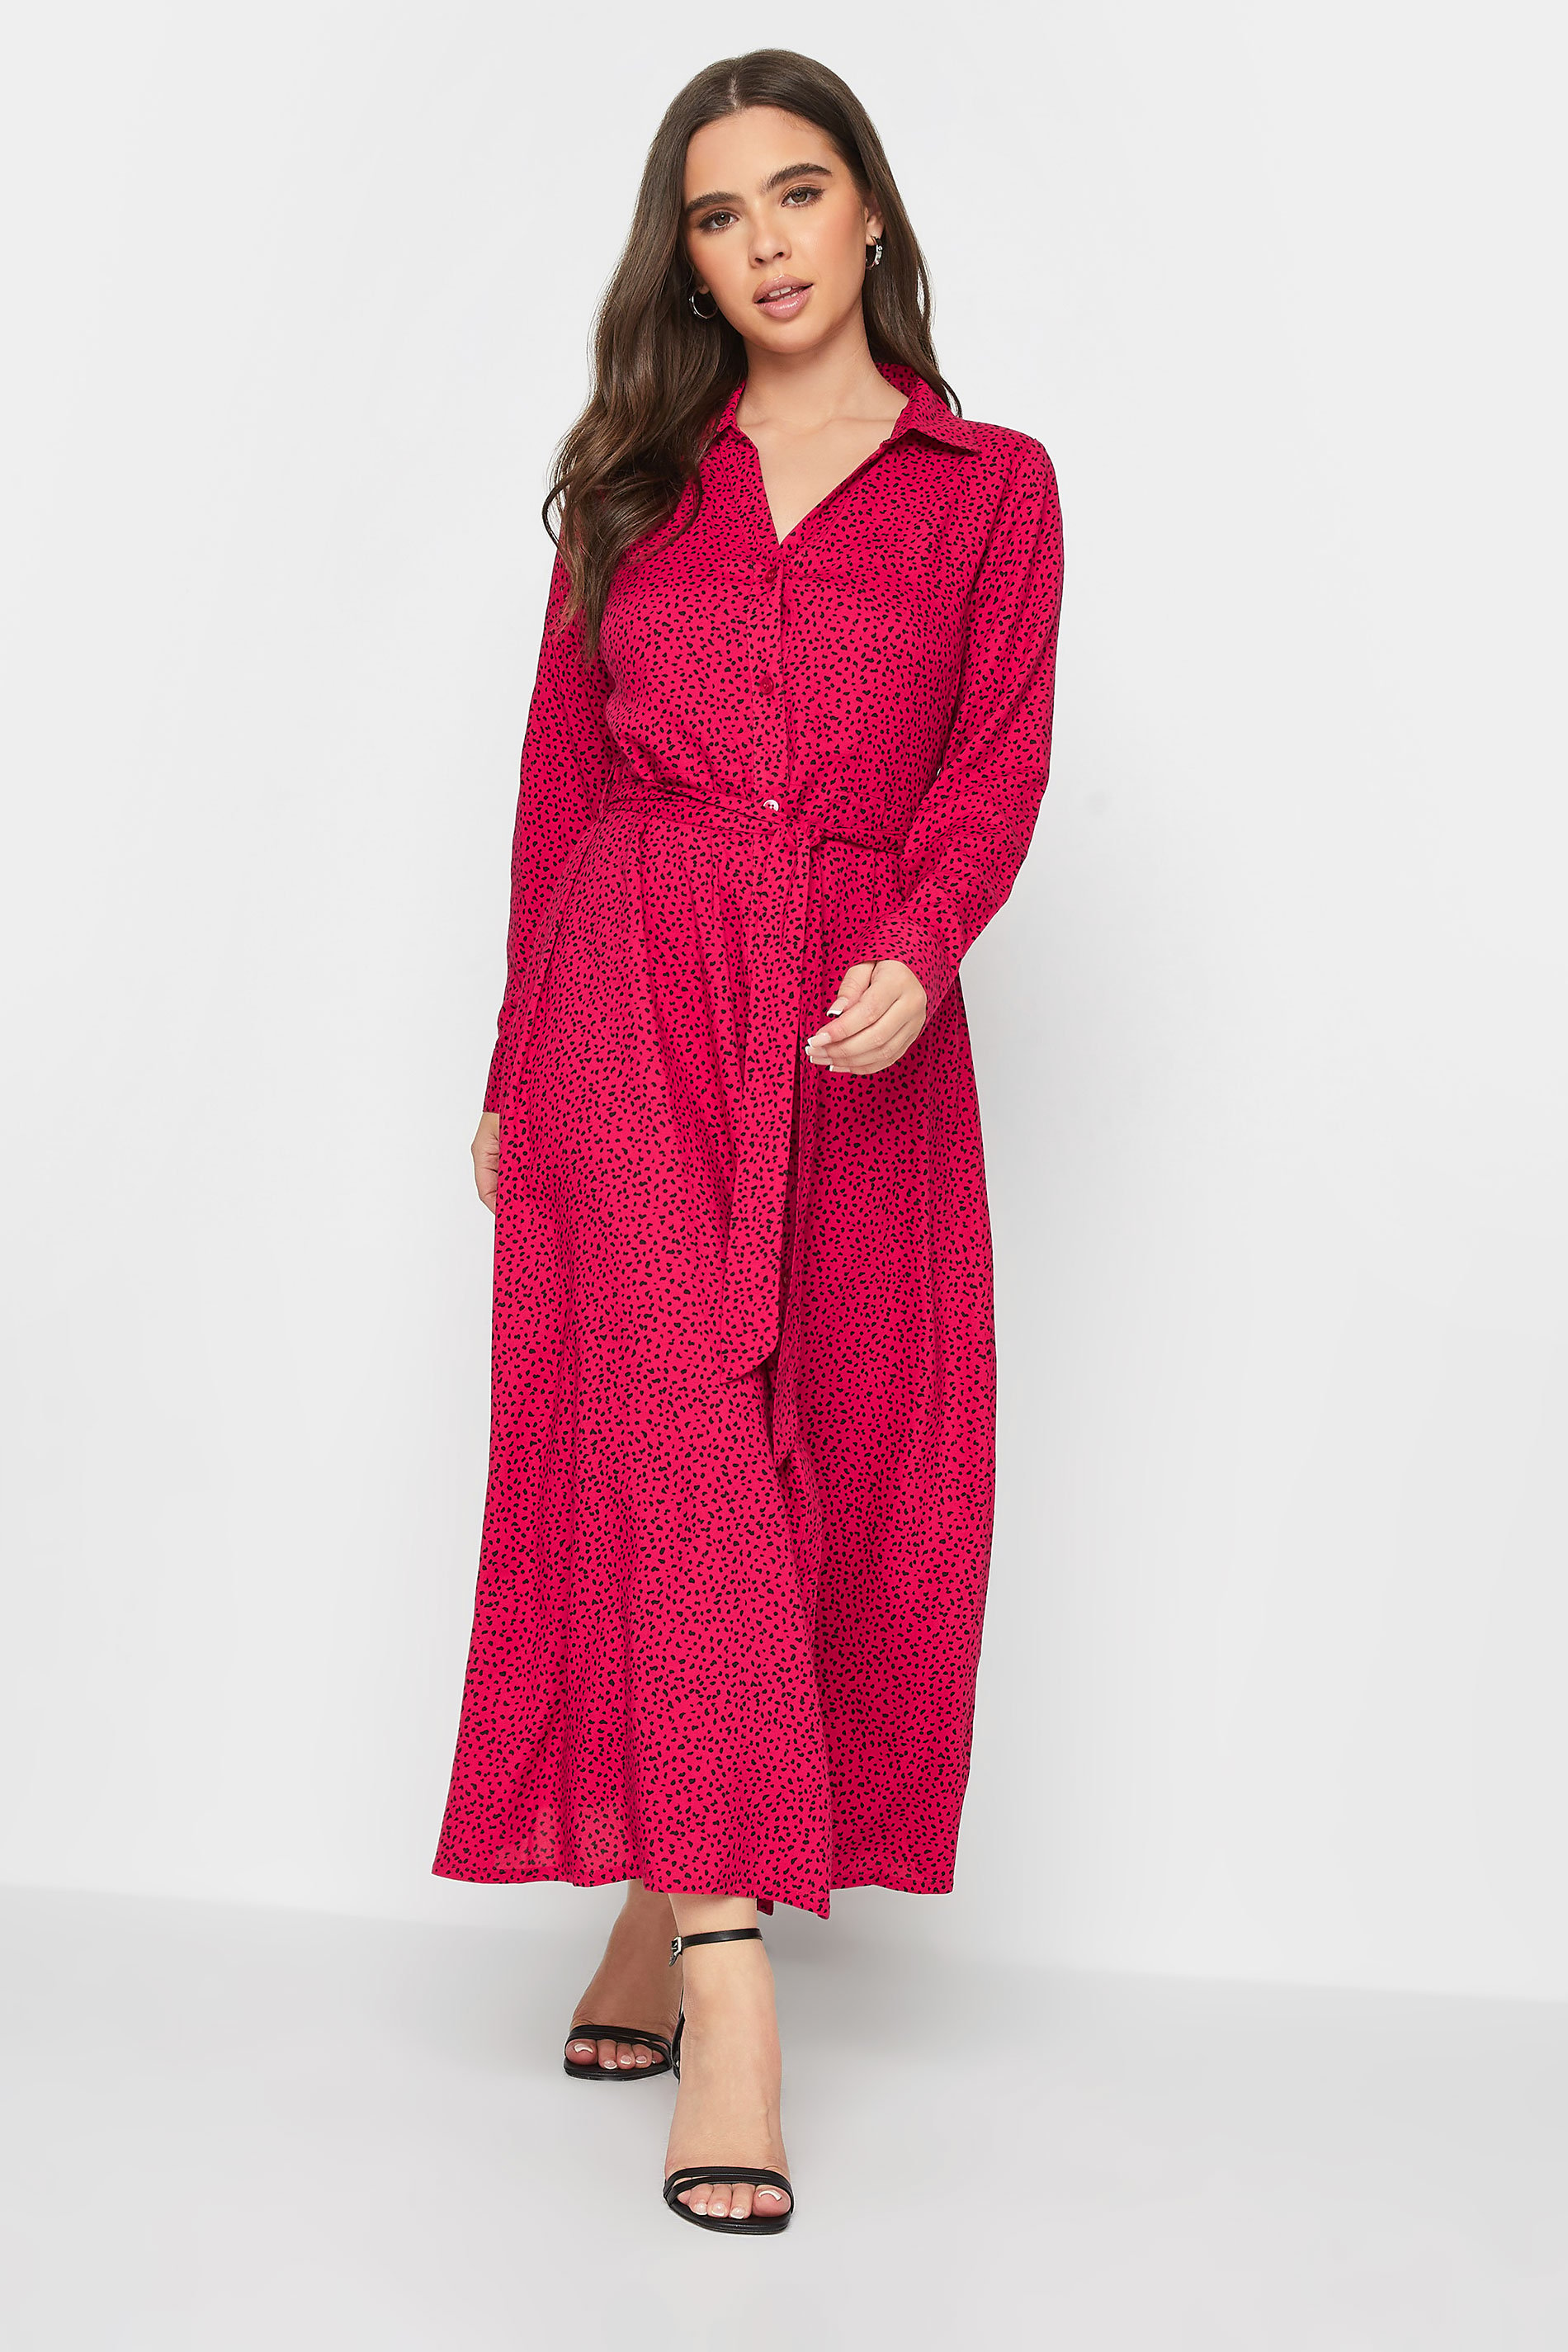 Petite Red Dalmatian Print Long Sleeve Maxi Shirt Dress | PixieGirl 2